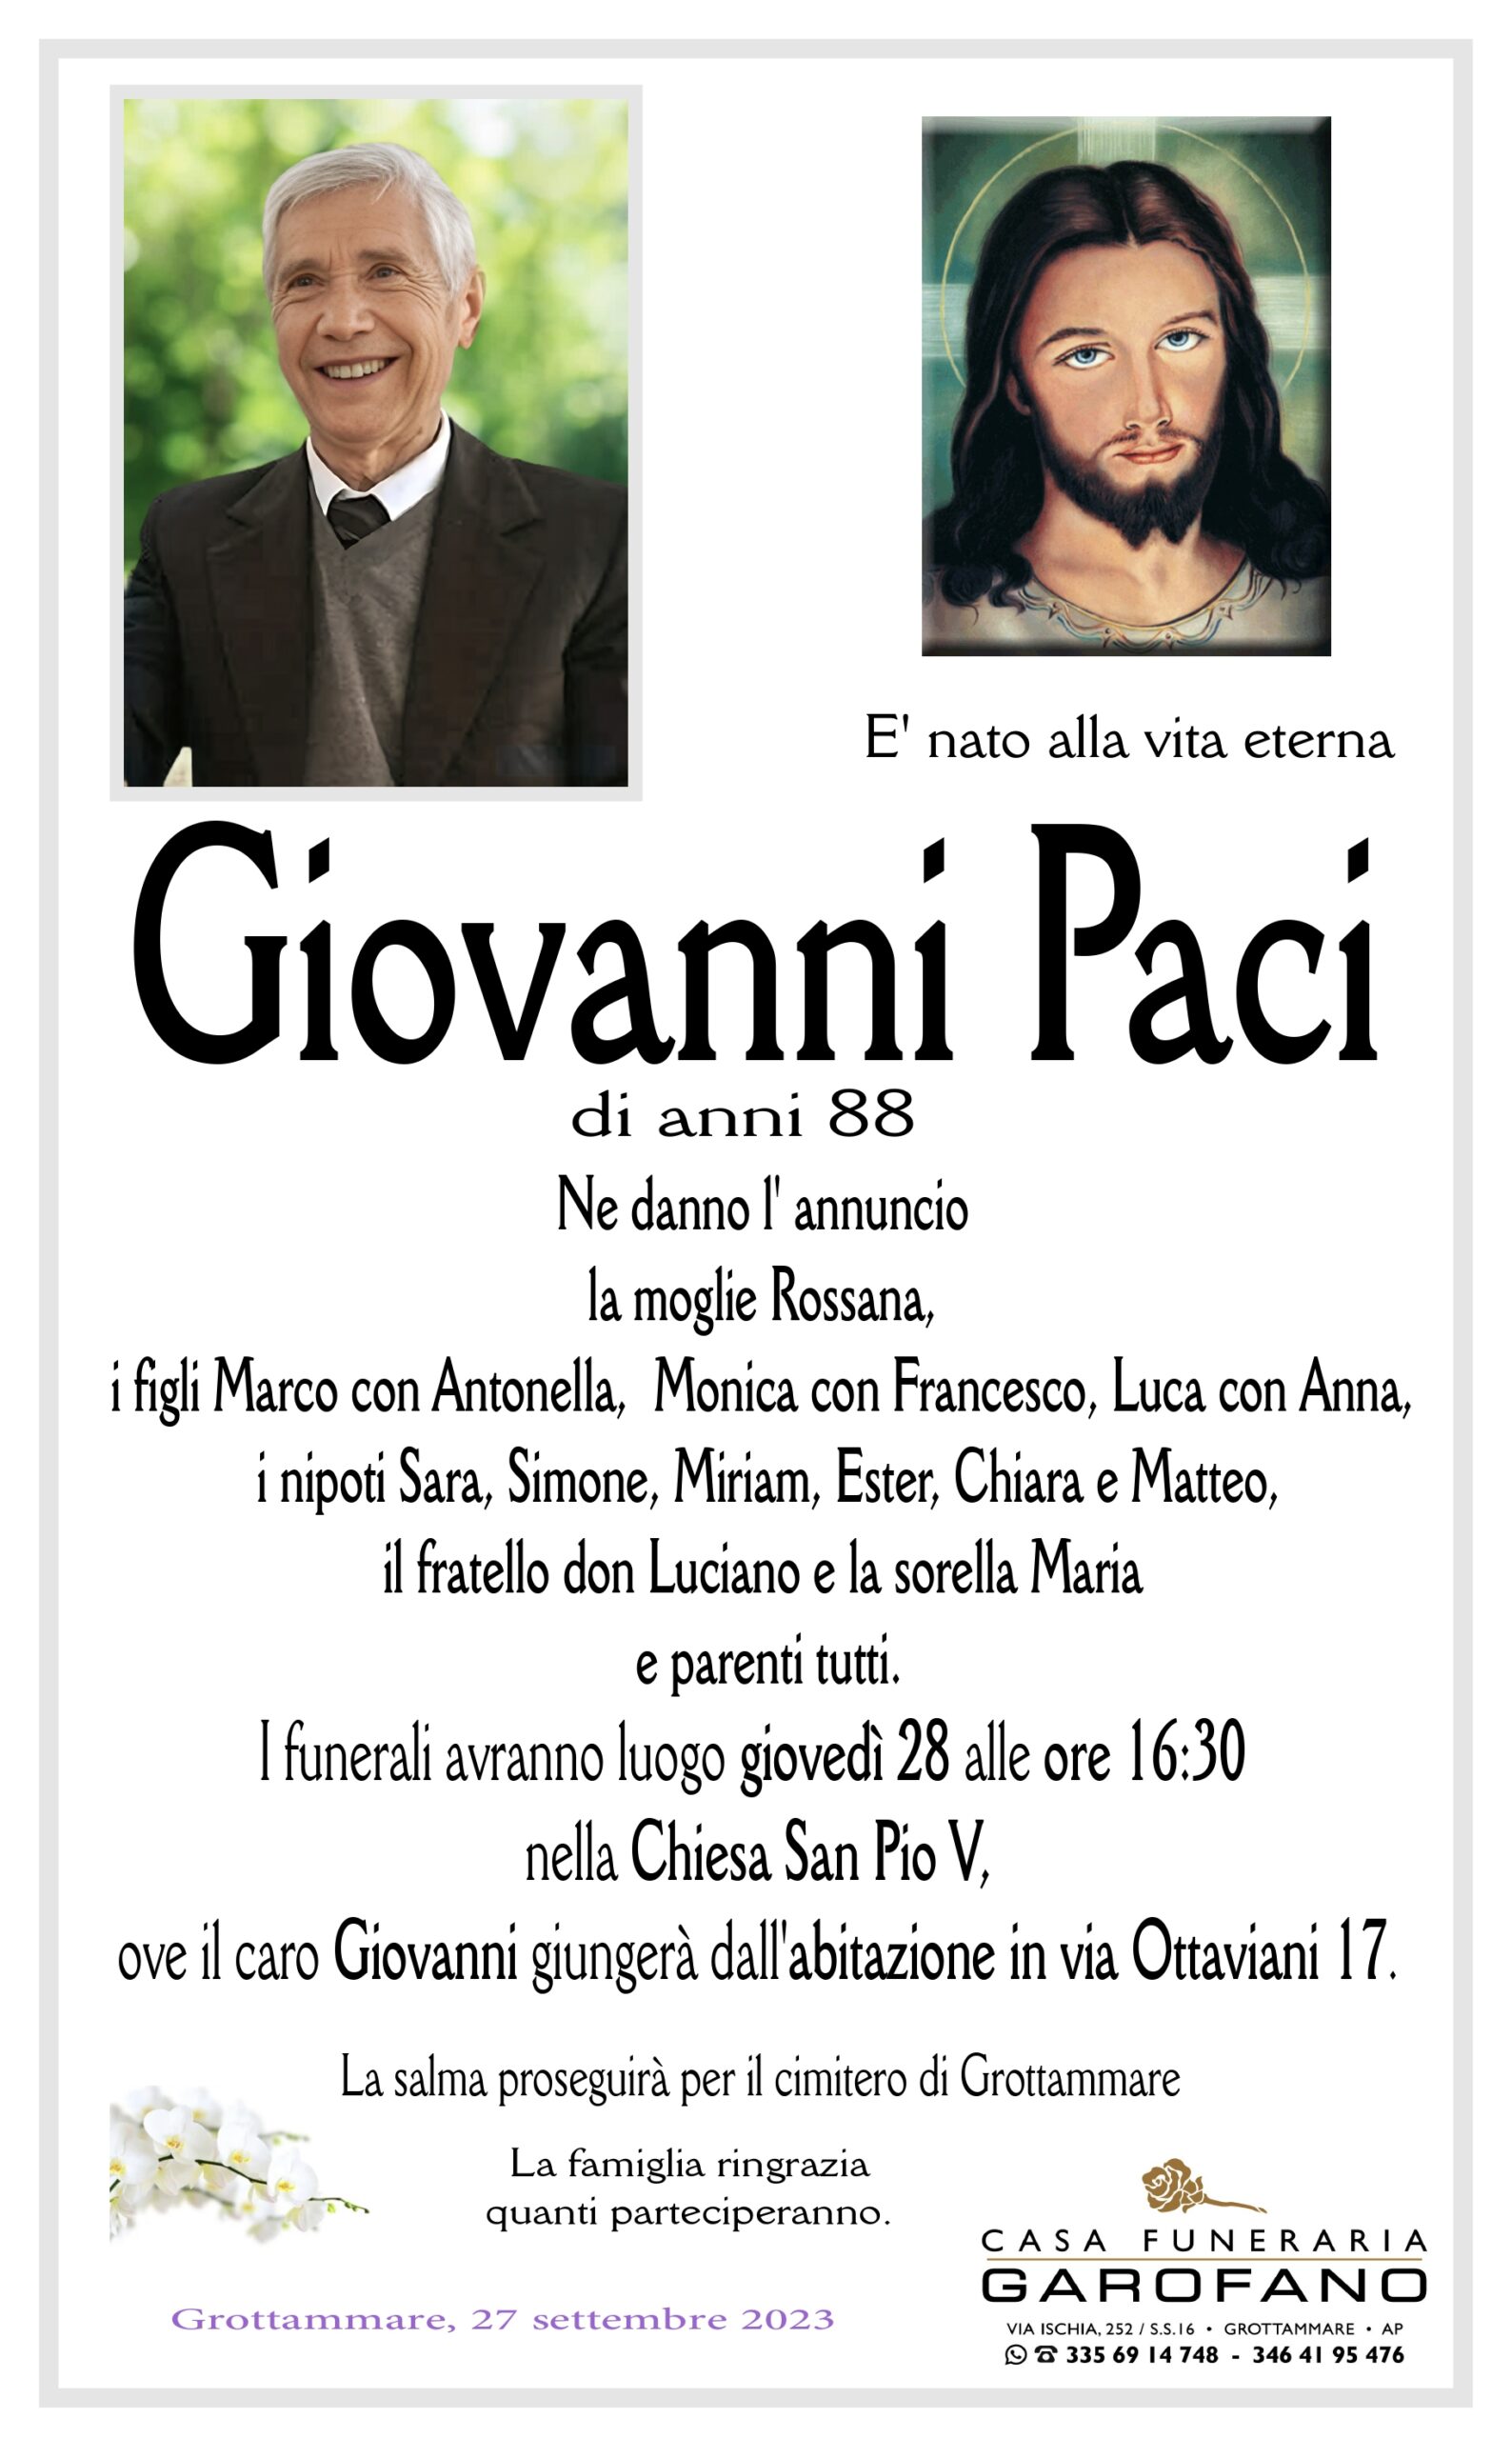 Giovanni Paci